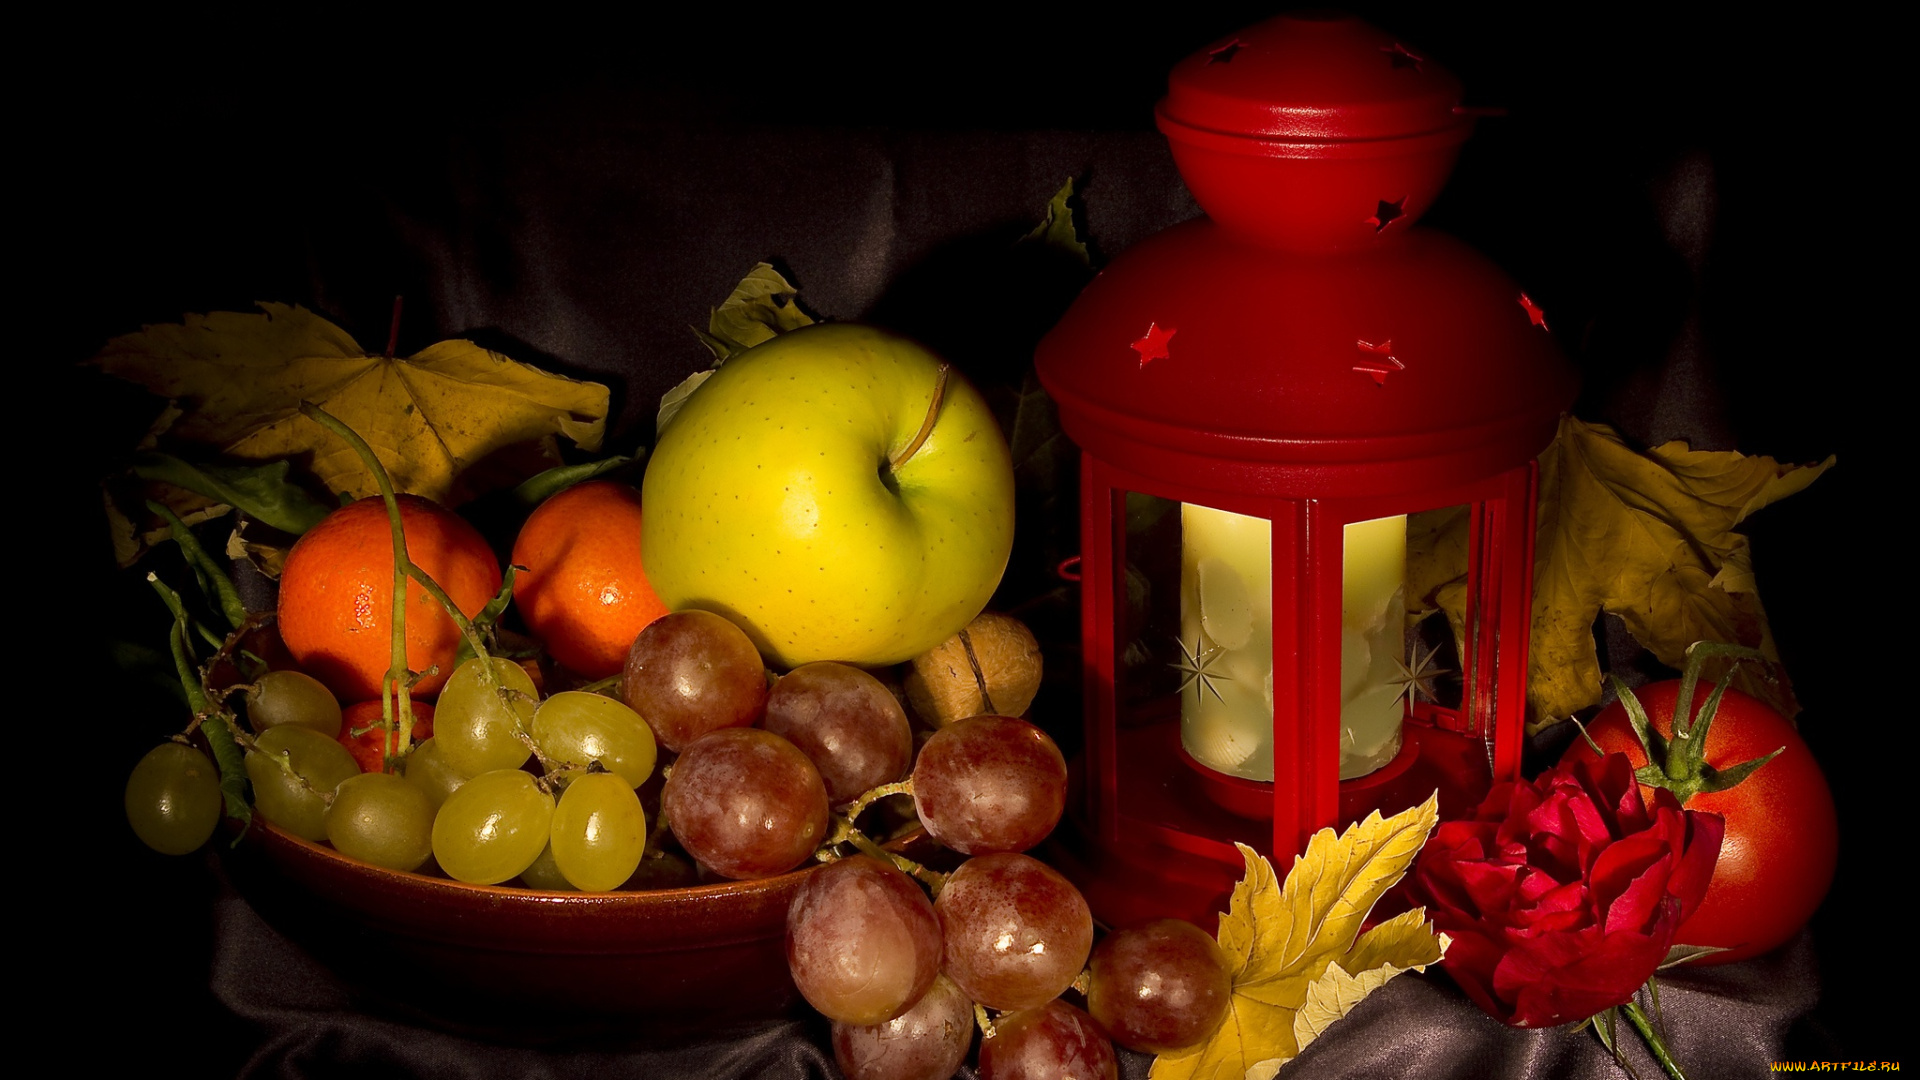 еда, натюрморт, виноград, яблоко, осень, листья, фонарь, натюрмотр, мандарины, томаты, помидоры